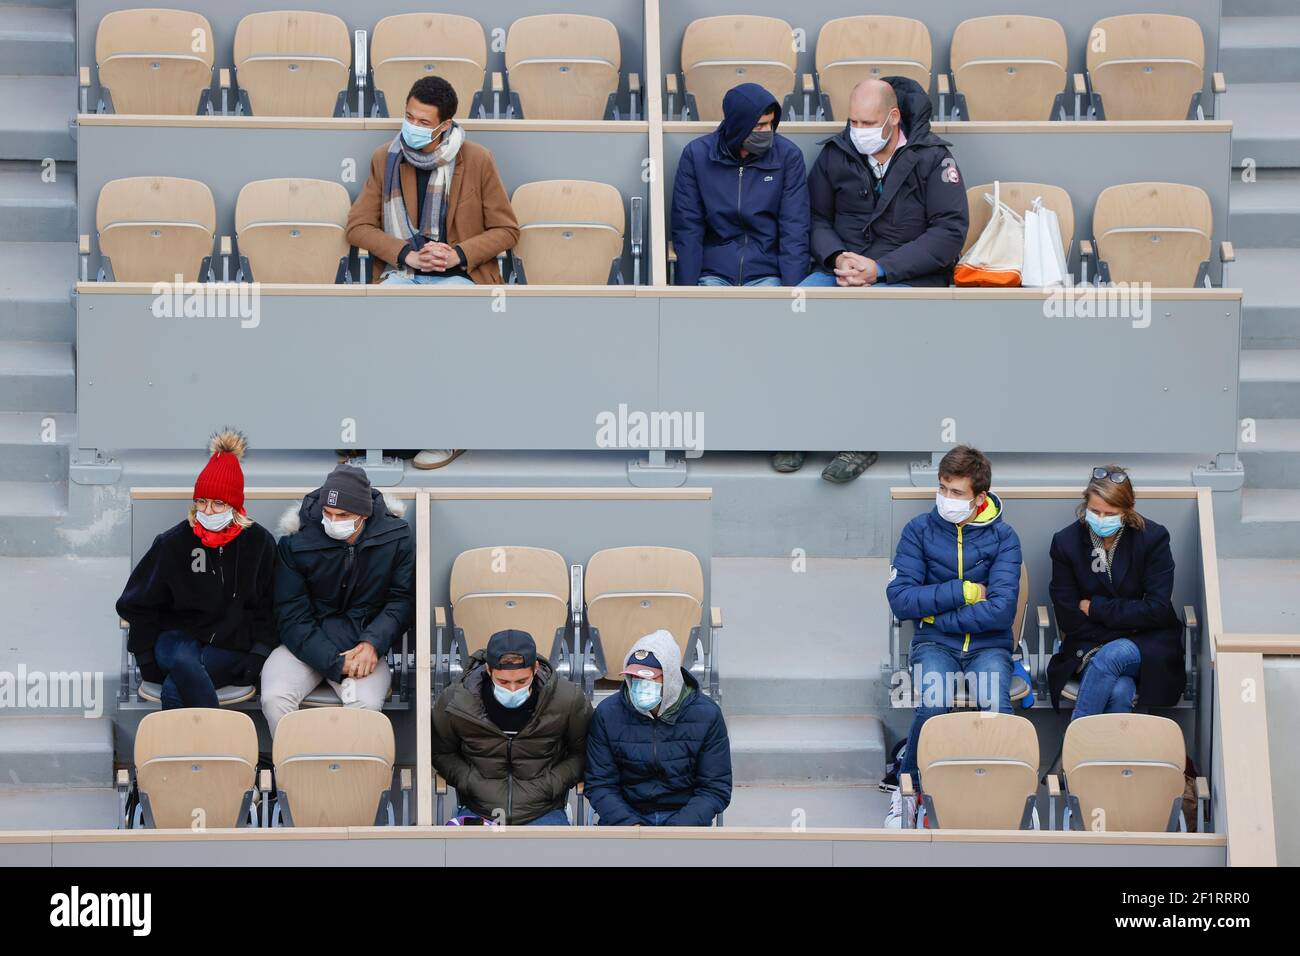 Les spectateurs et les supporters sont habillés comme en hiver équipés de  casquettes, foulards, vestes, repliés sur eux-mêmes saisis par le vent  froid et humide à l'intérieur du stade Philippe Chatrier pendant